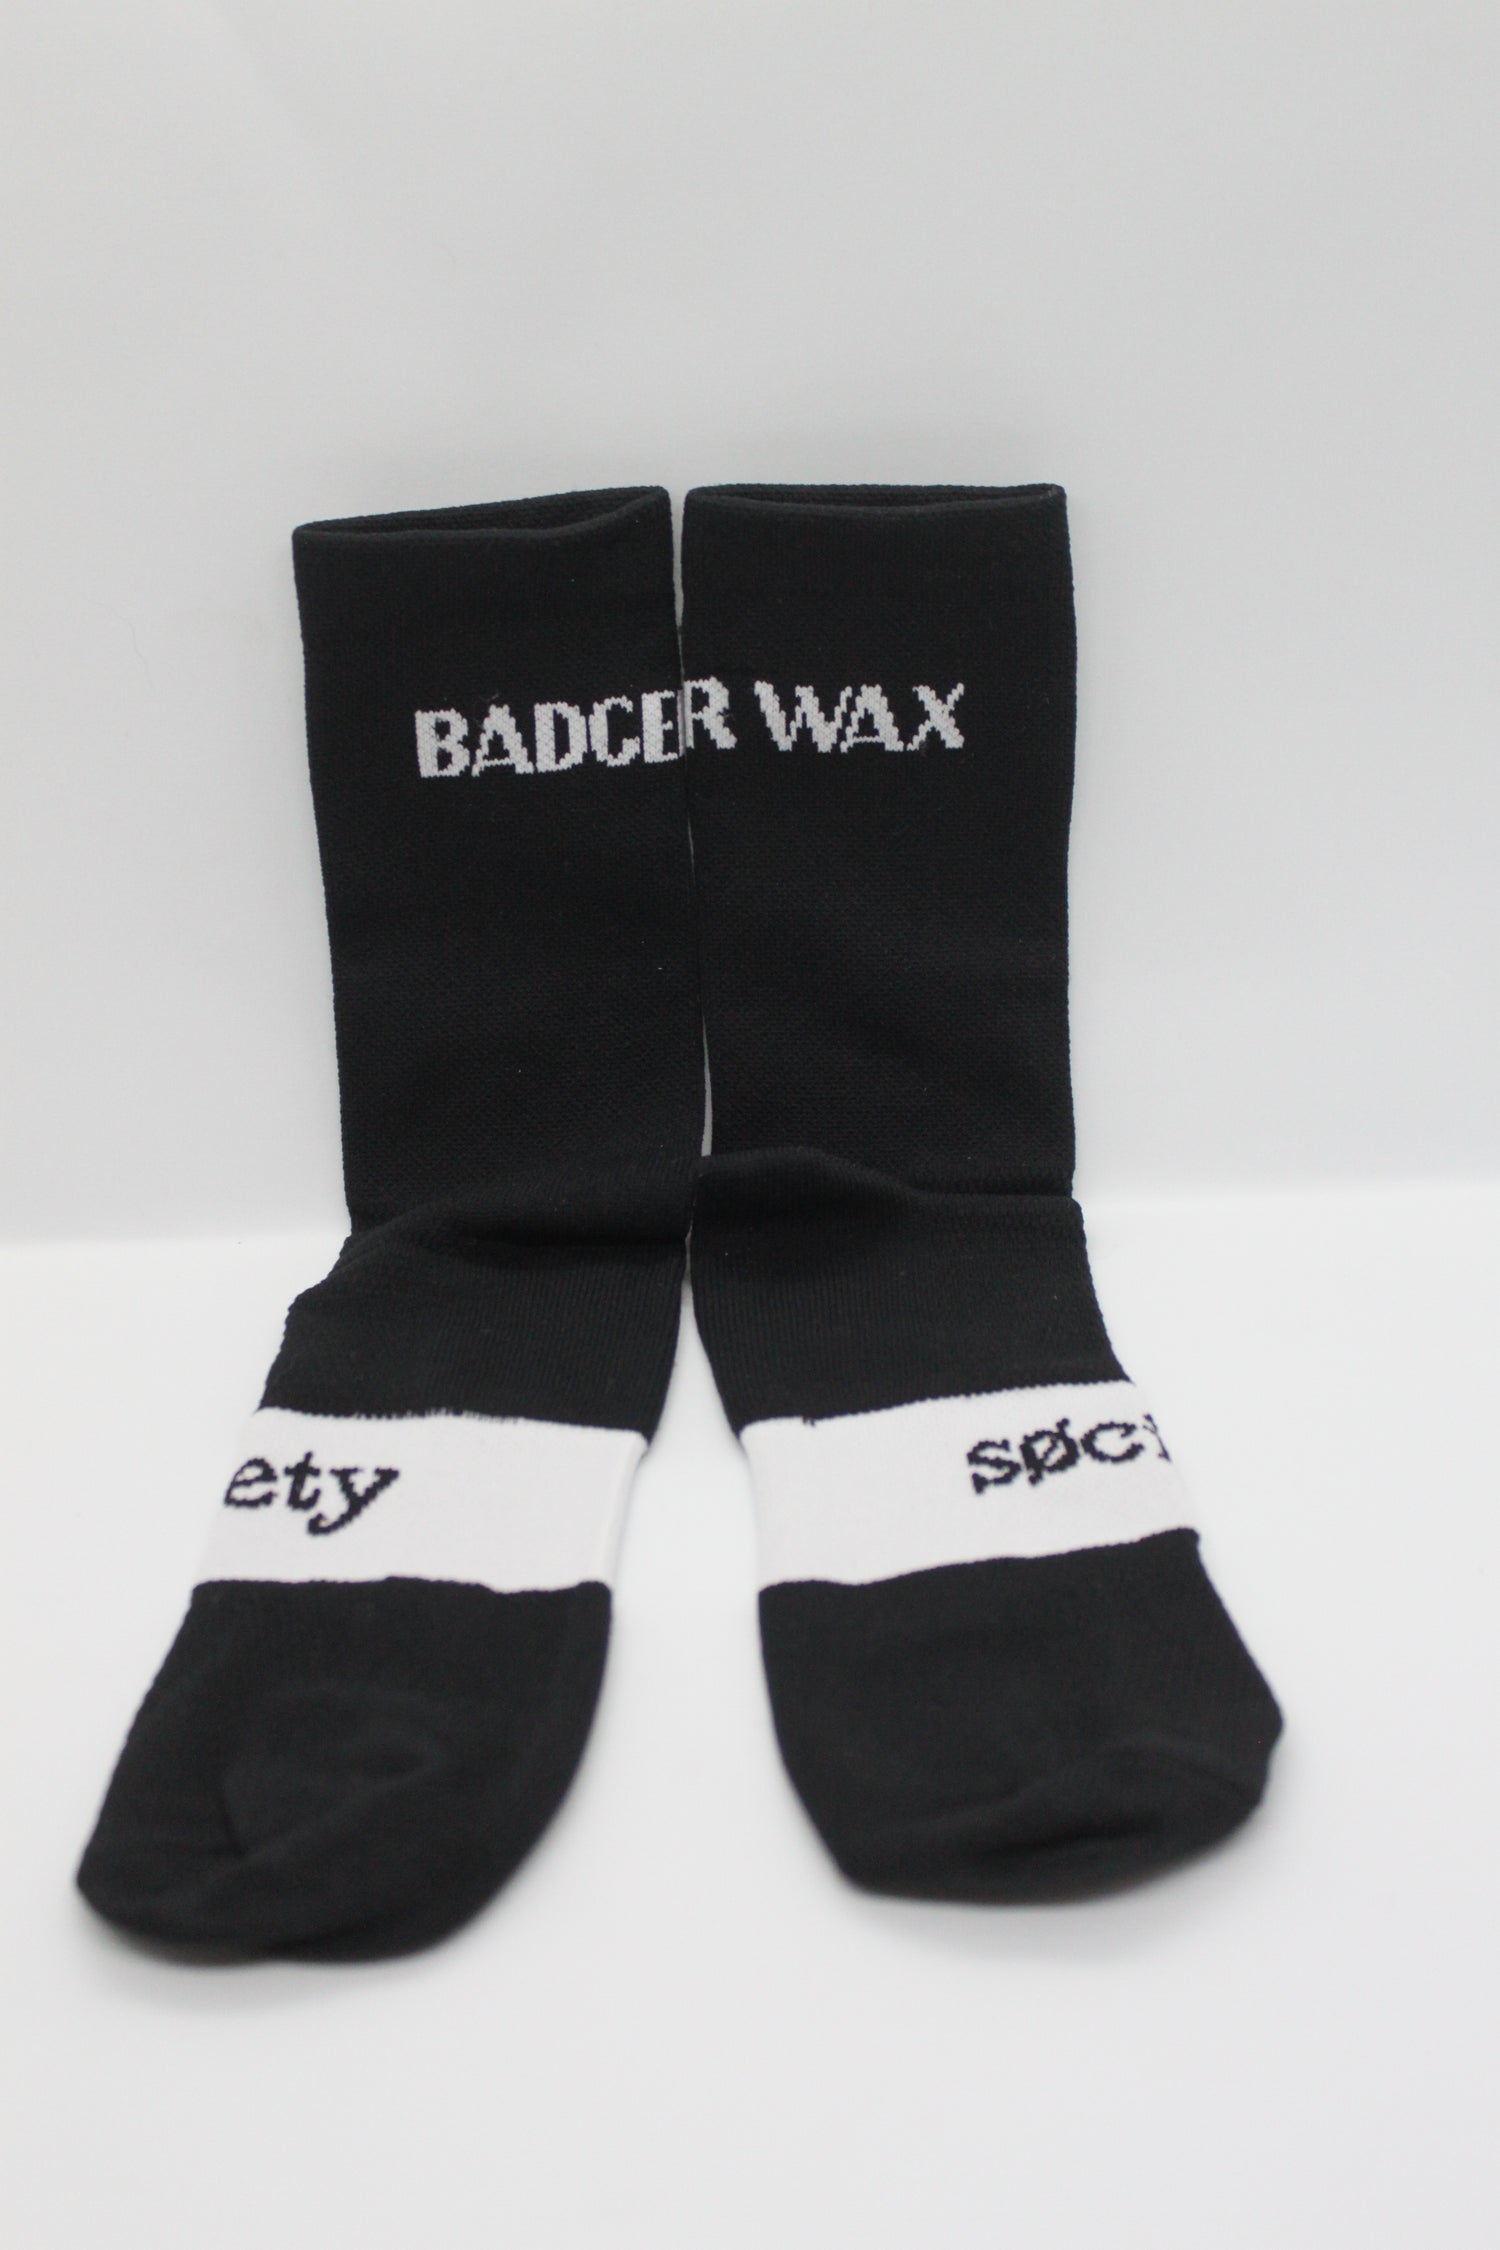 Badger Wax Socks - Black Wrap Text - Badger Wax